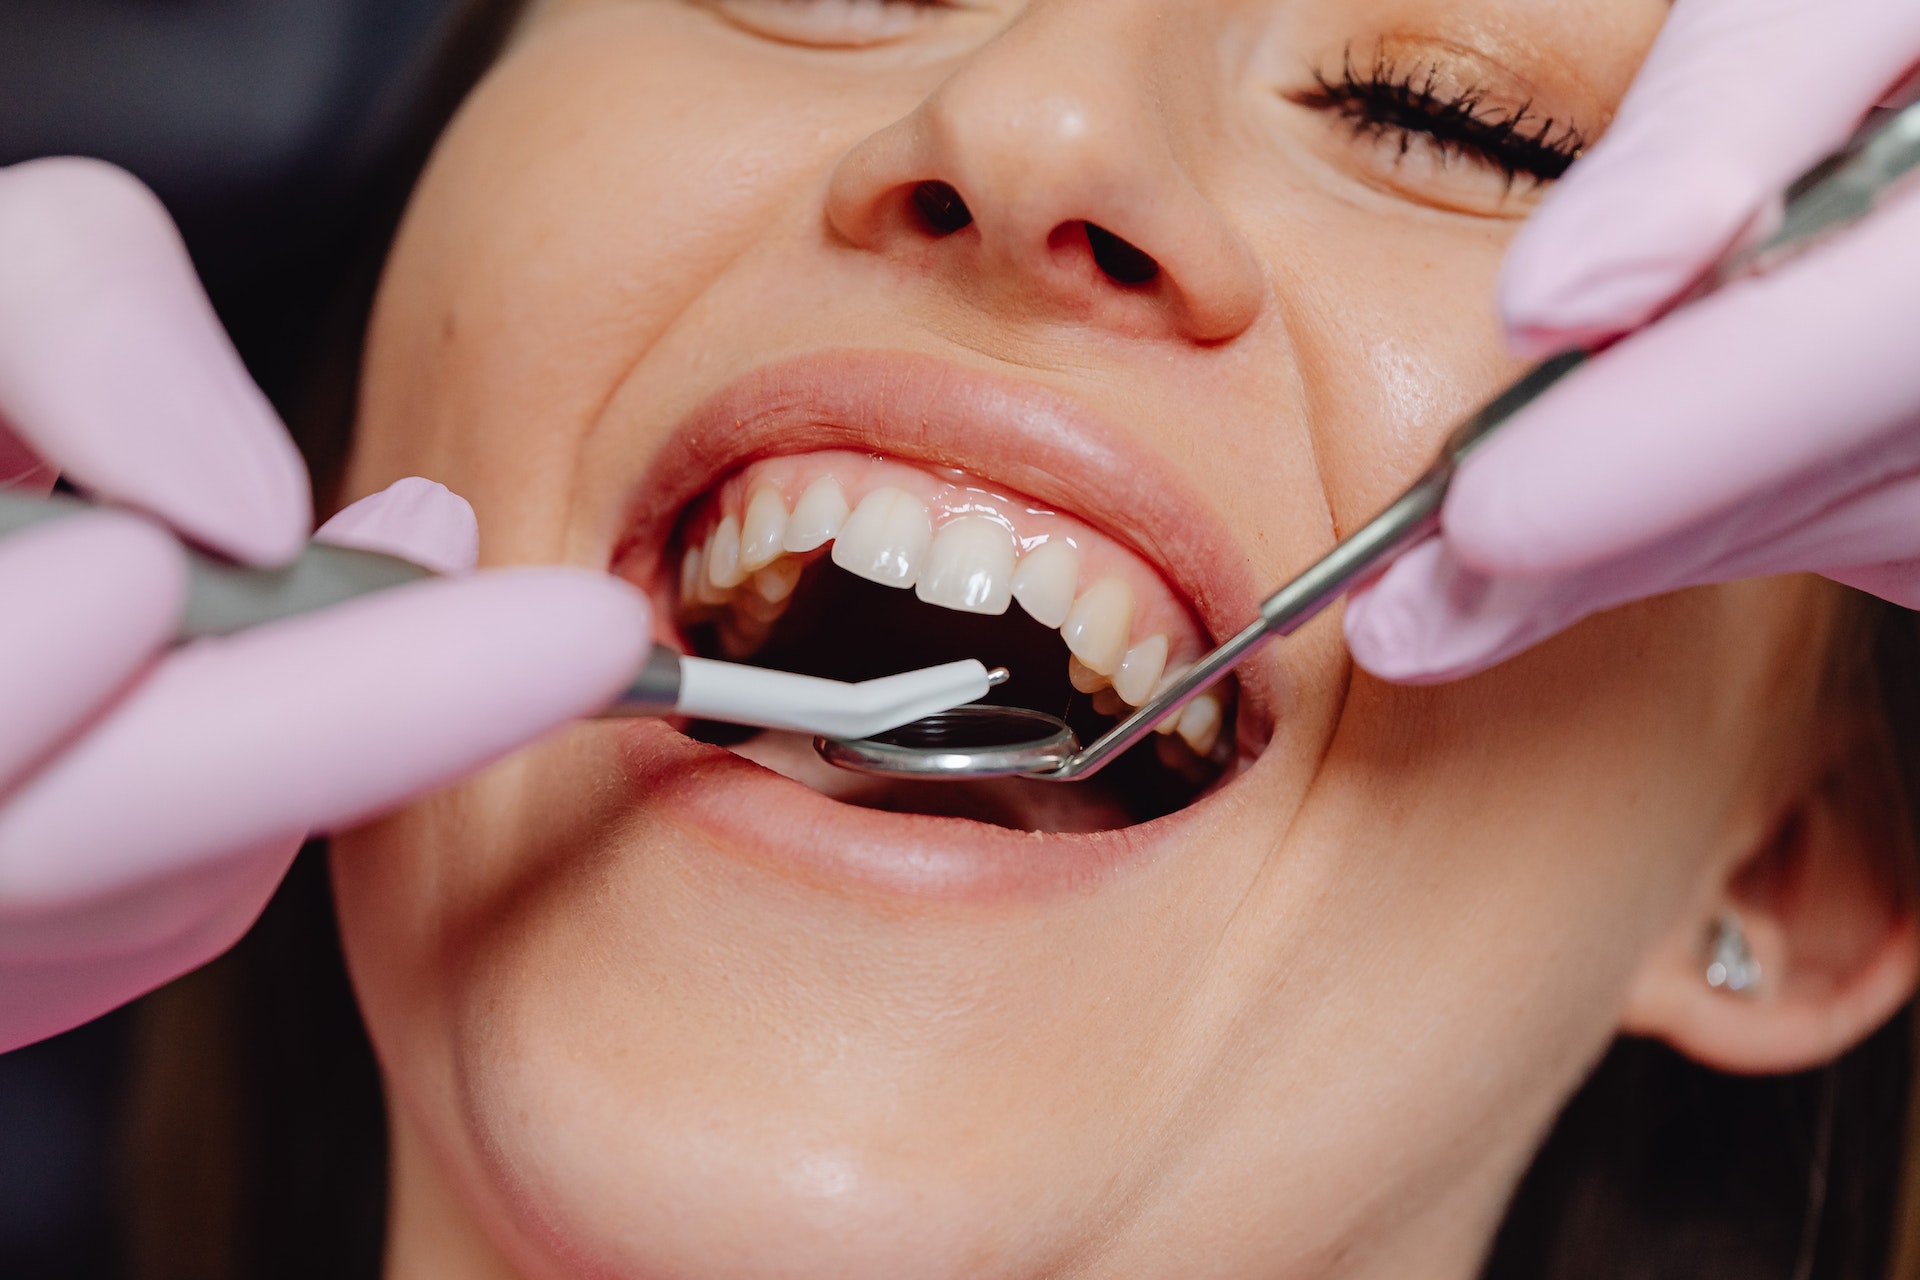 La gengivite è un processo infiammatorio che riguarda le gengive: l'acqua salata può dare sollievo nell'attesa di una visita dal dentista.